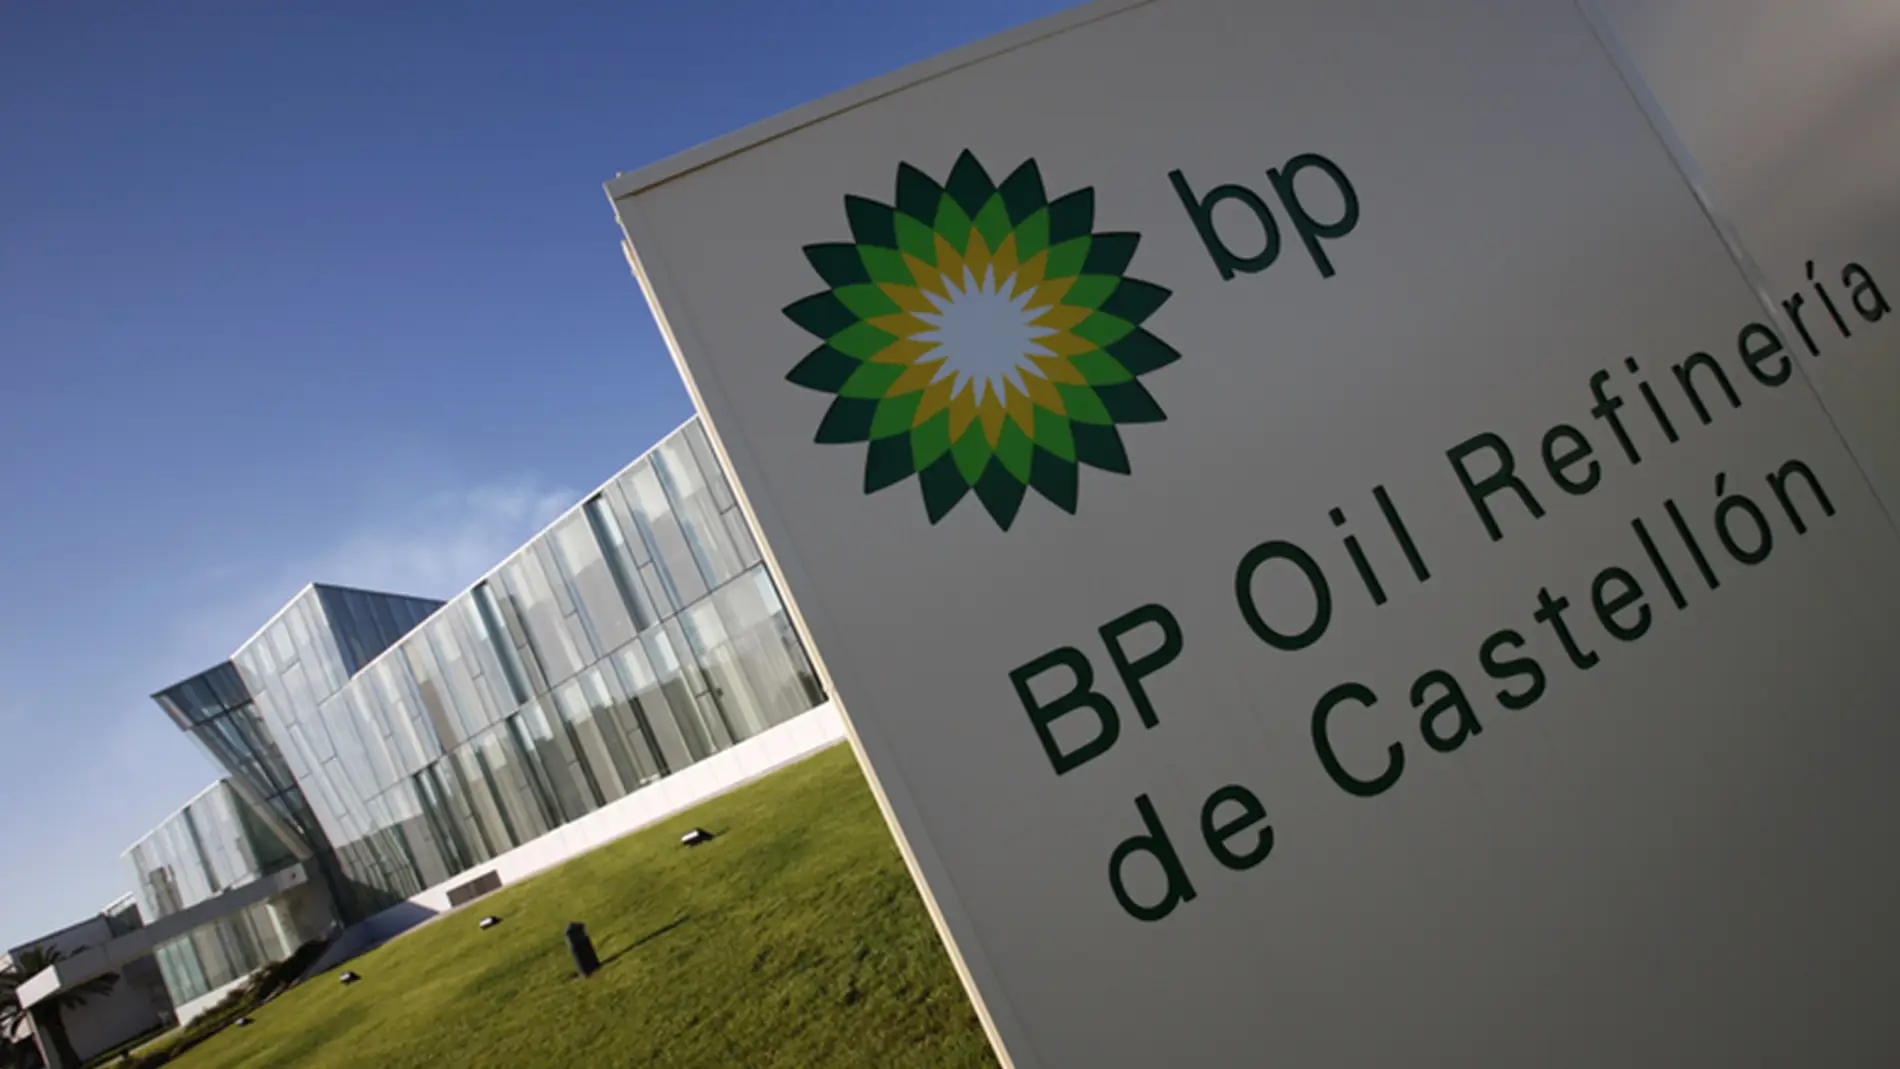 BP OIL - Castellón